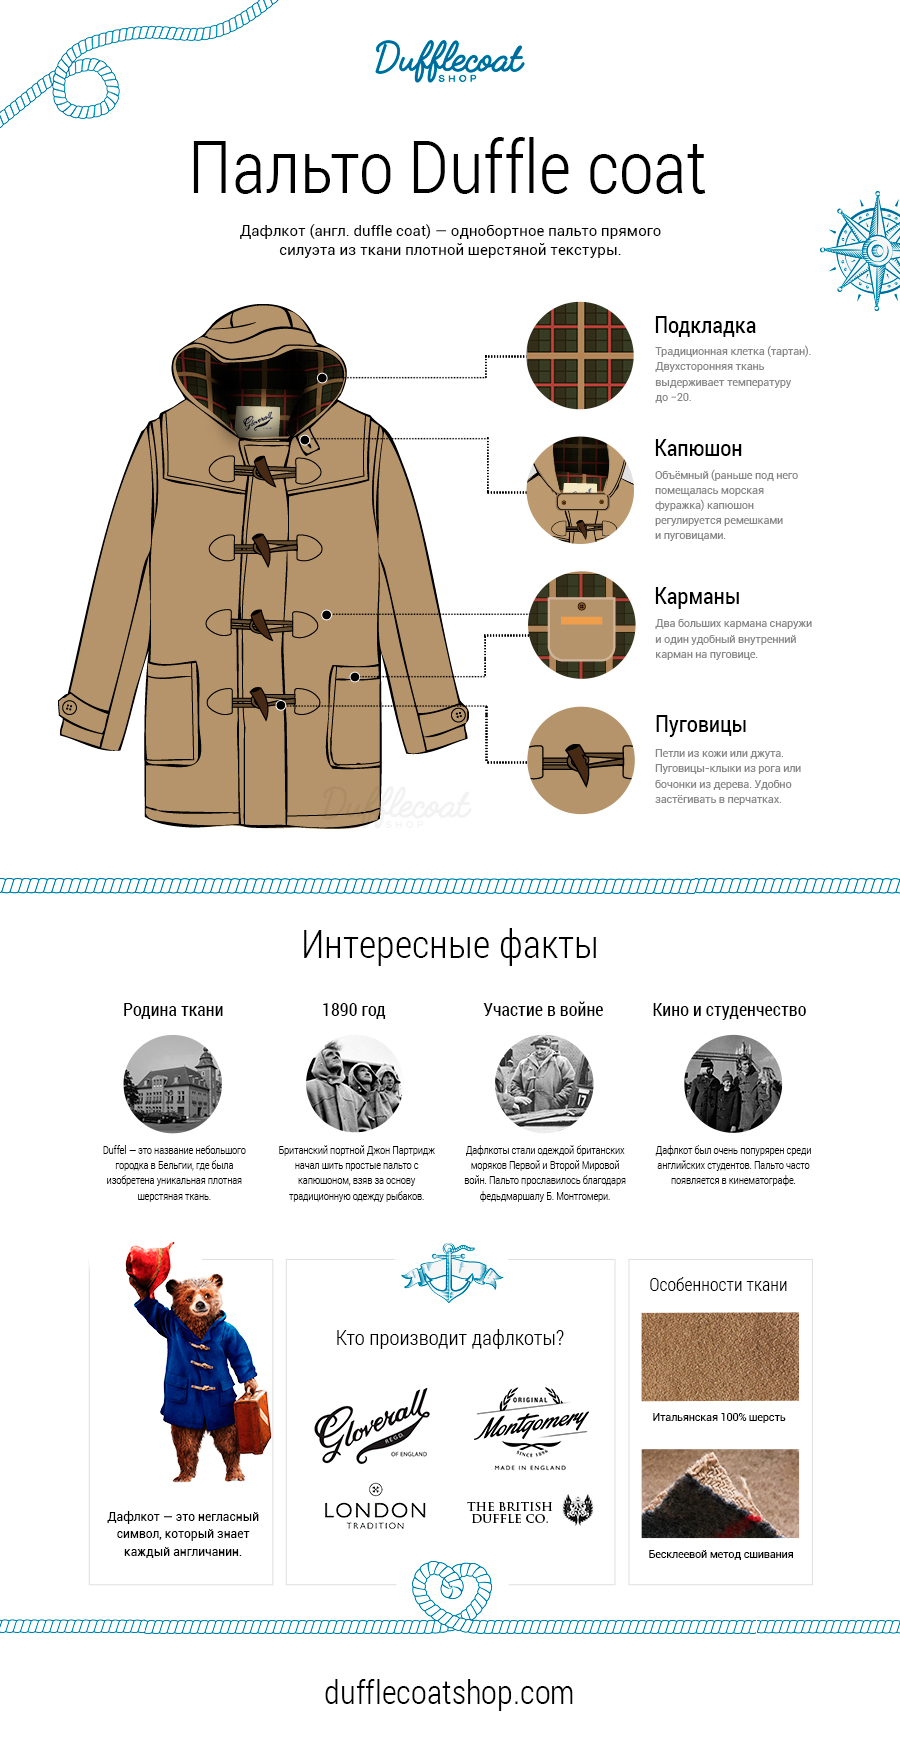 Инфографика дафлкоты